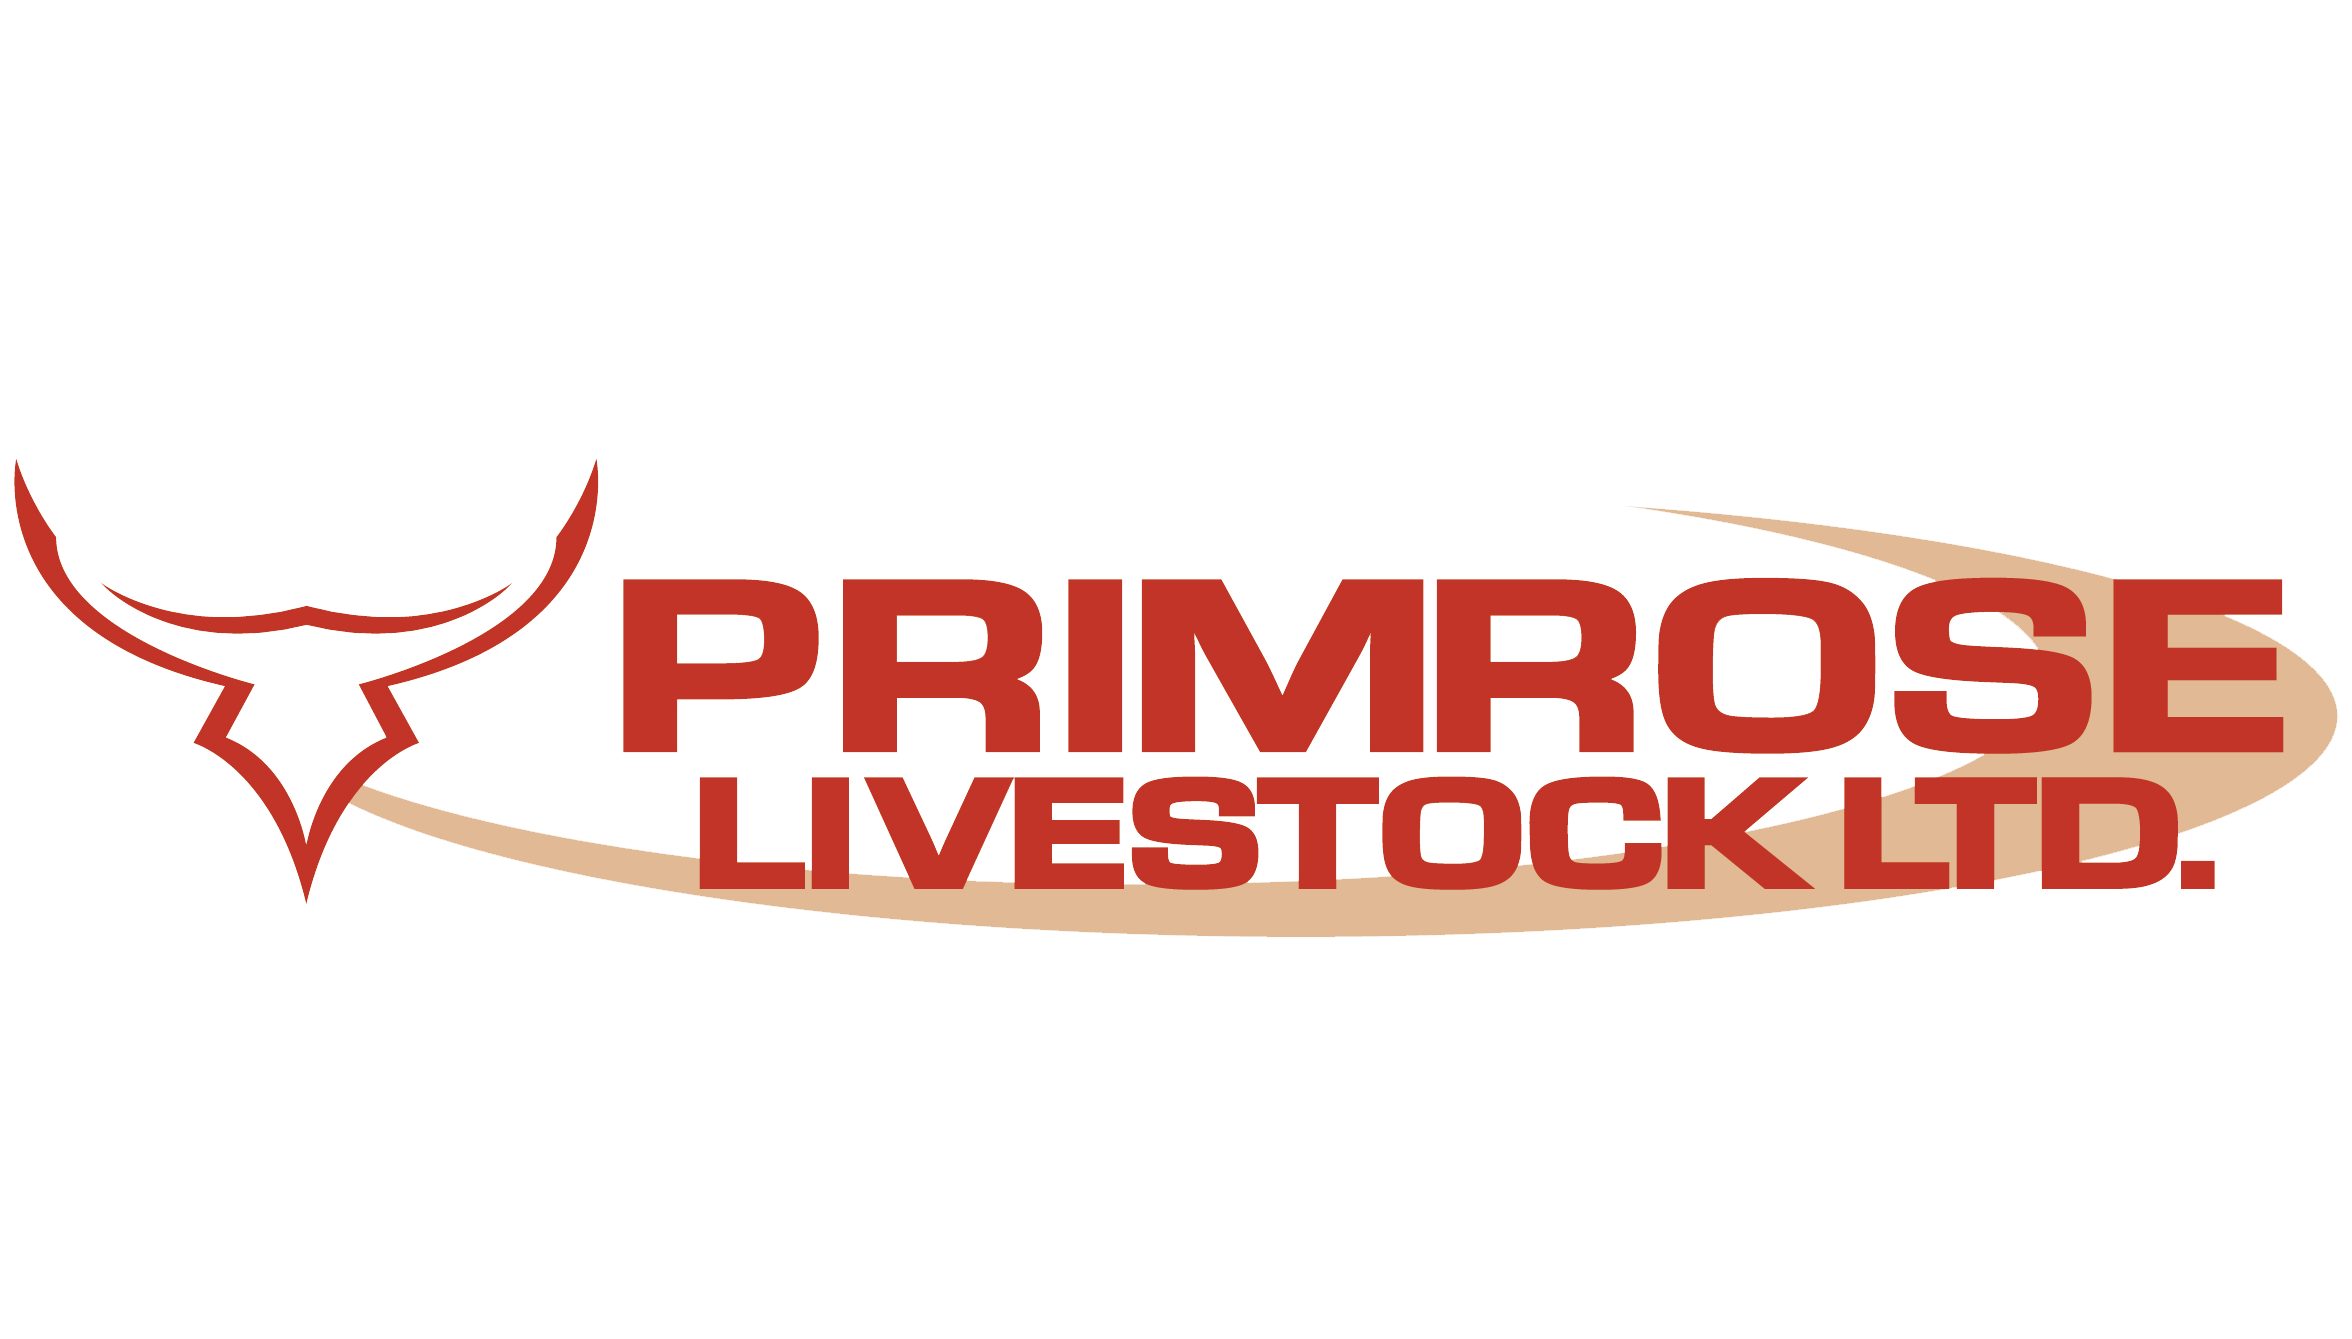 Primrose Livestock